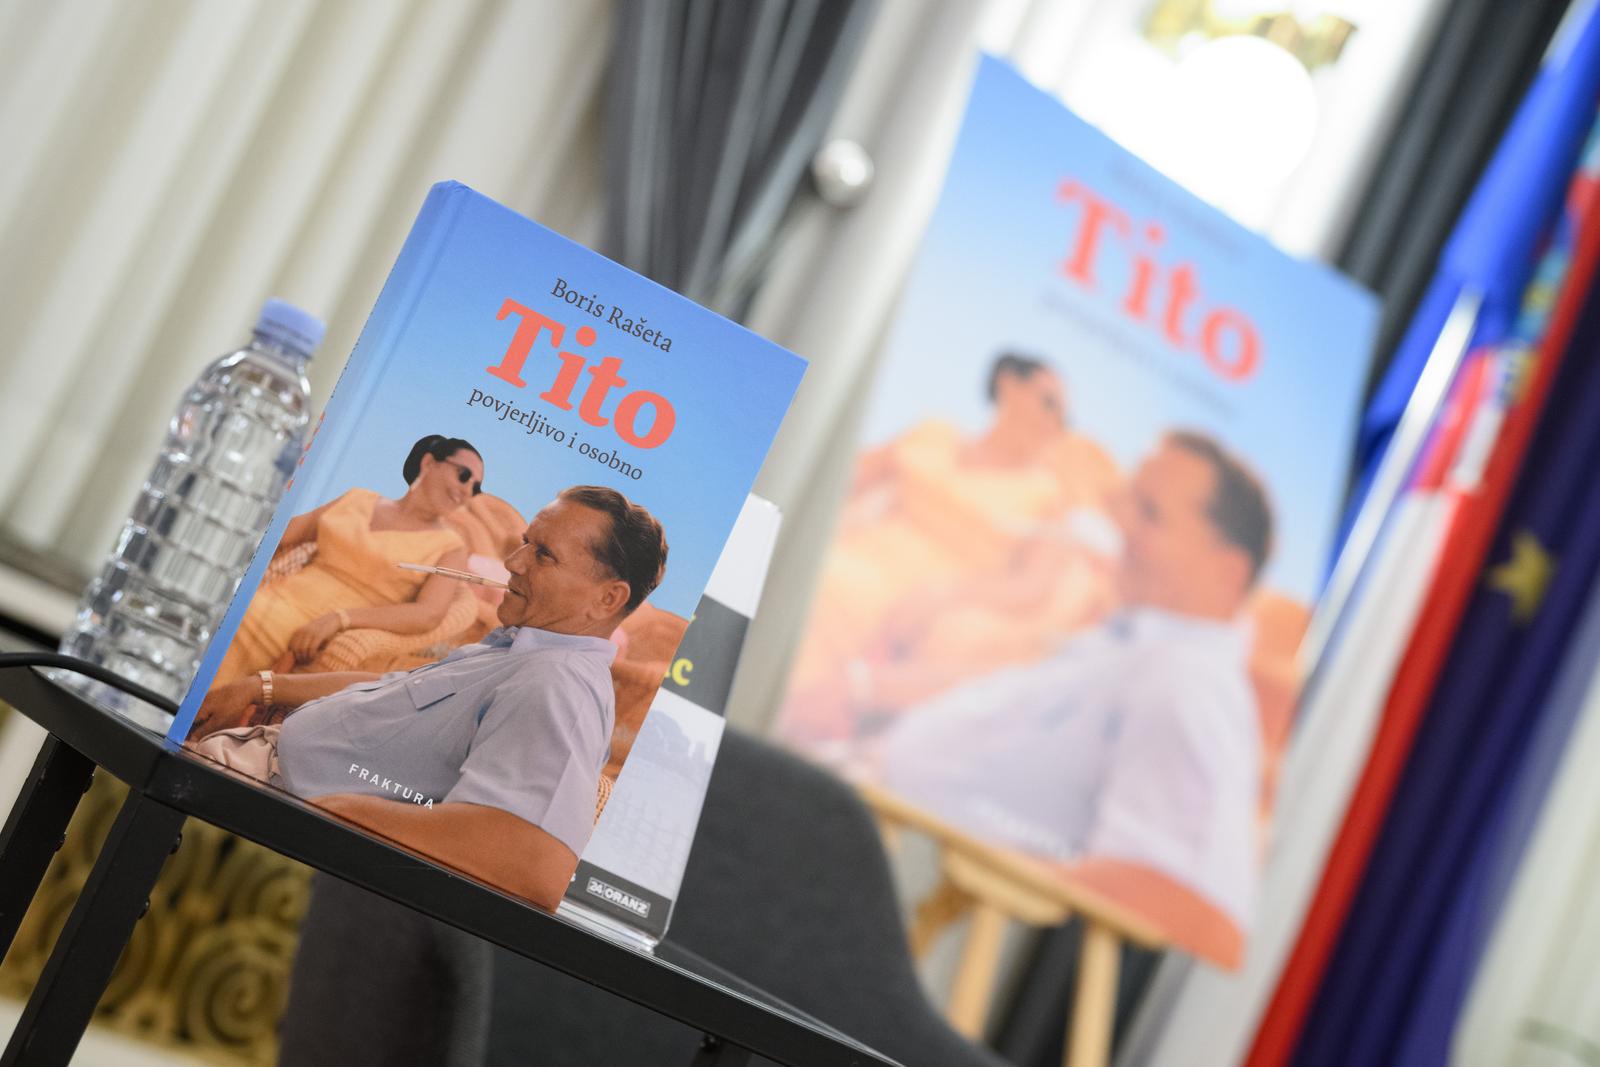 24.10.2023., Zagreb - U Novinarskom domu odrzano je predstavljanje knjige Tito, autora Borisa Rasete.
 Photo: Davor Puklavec/PIXSELL